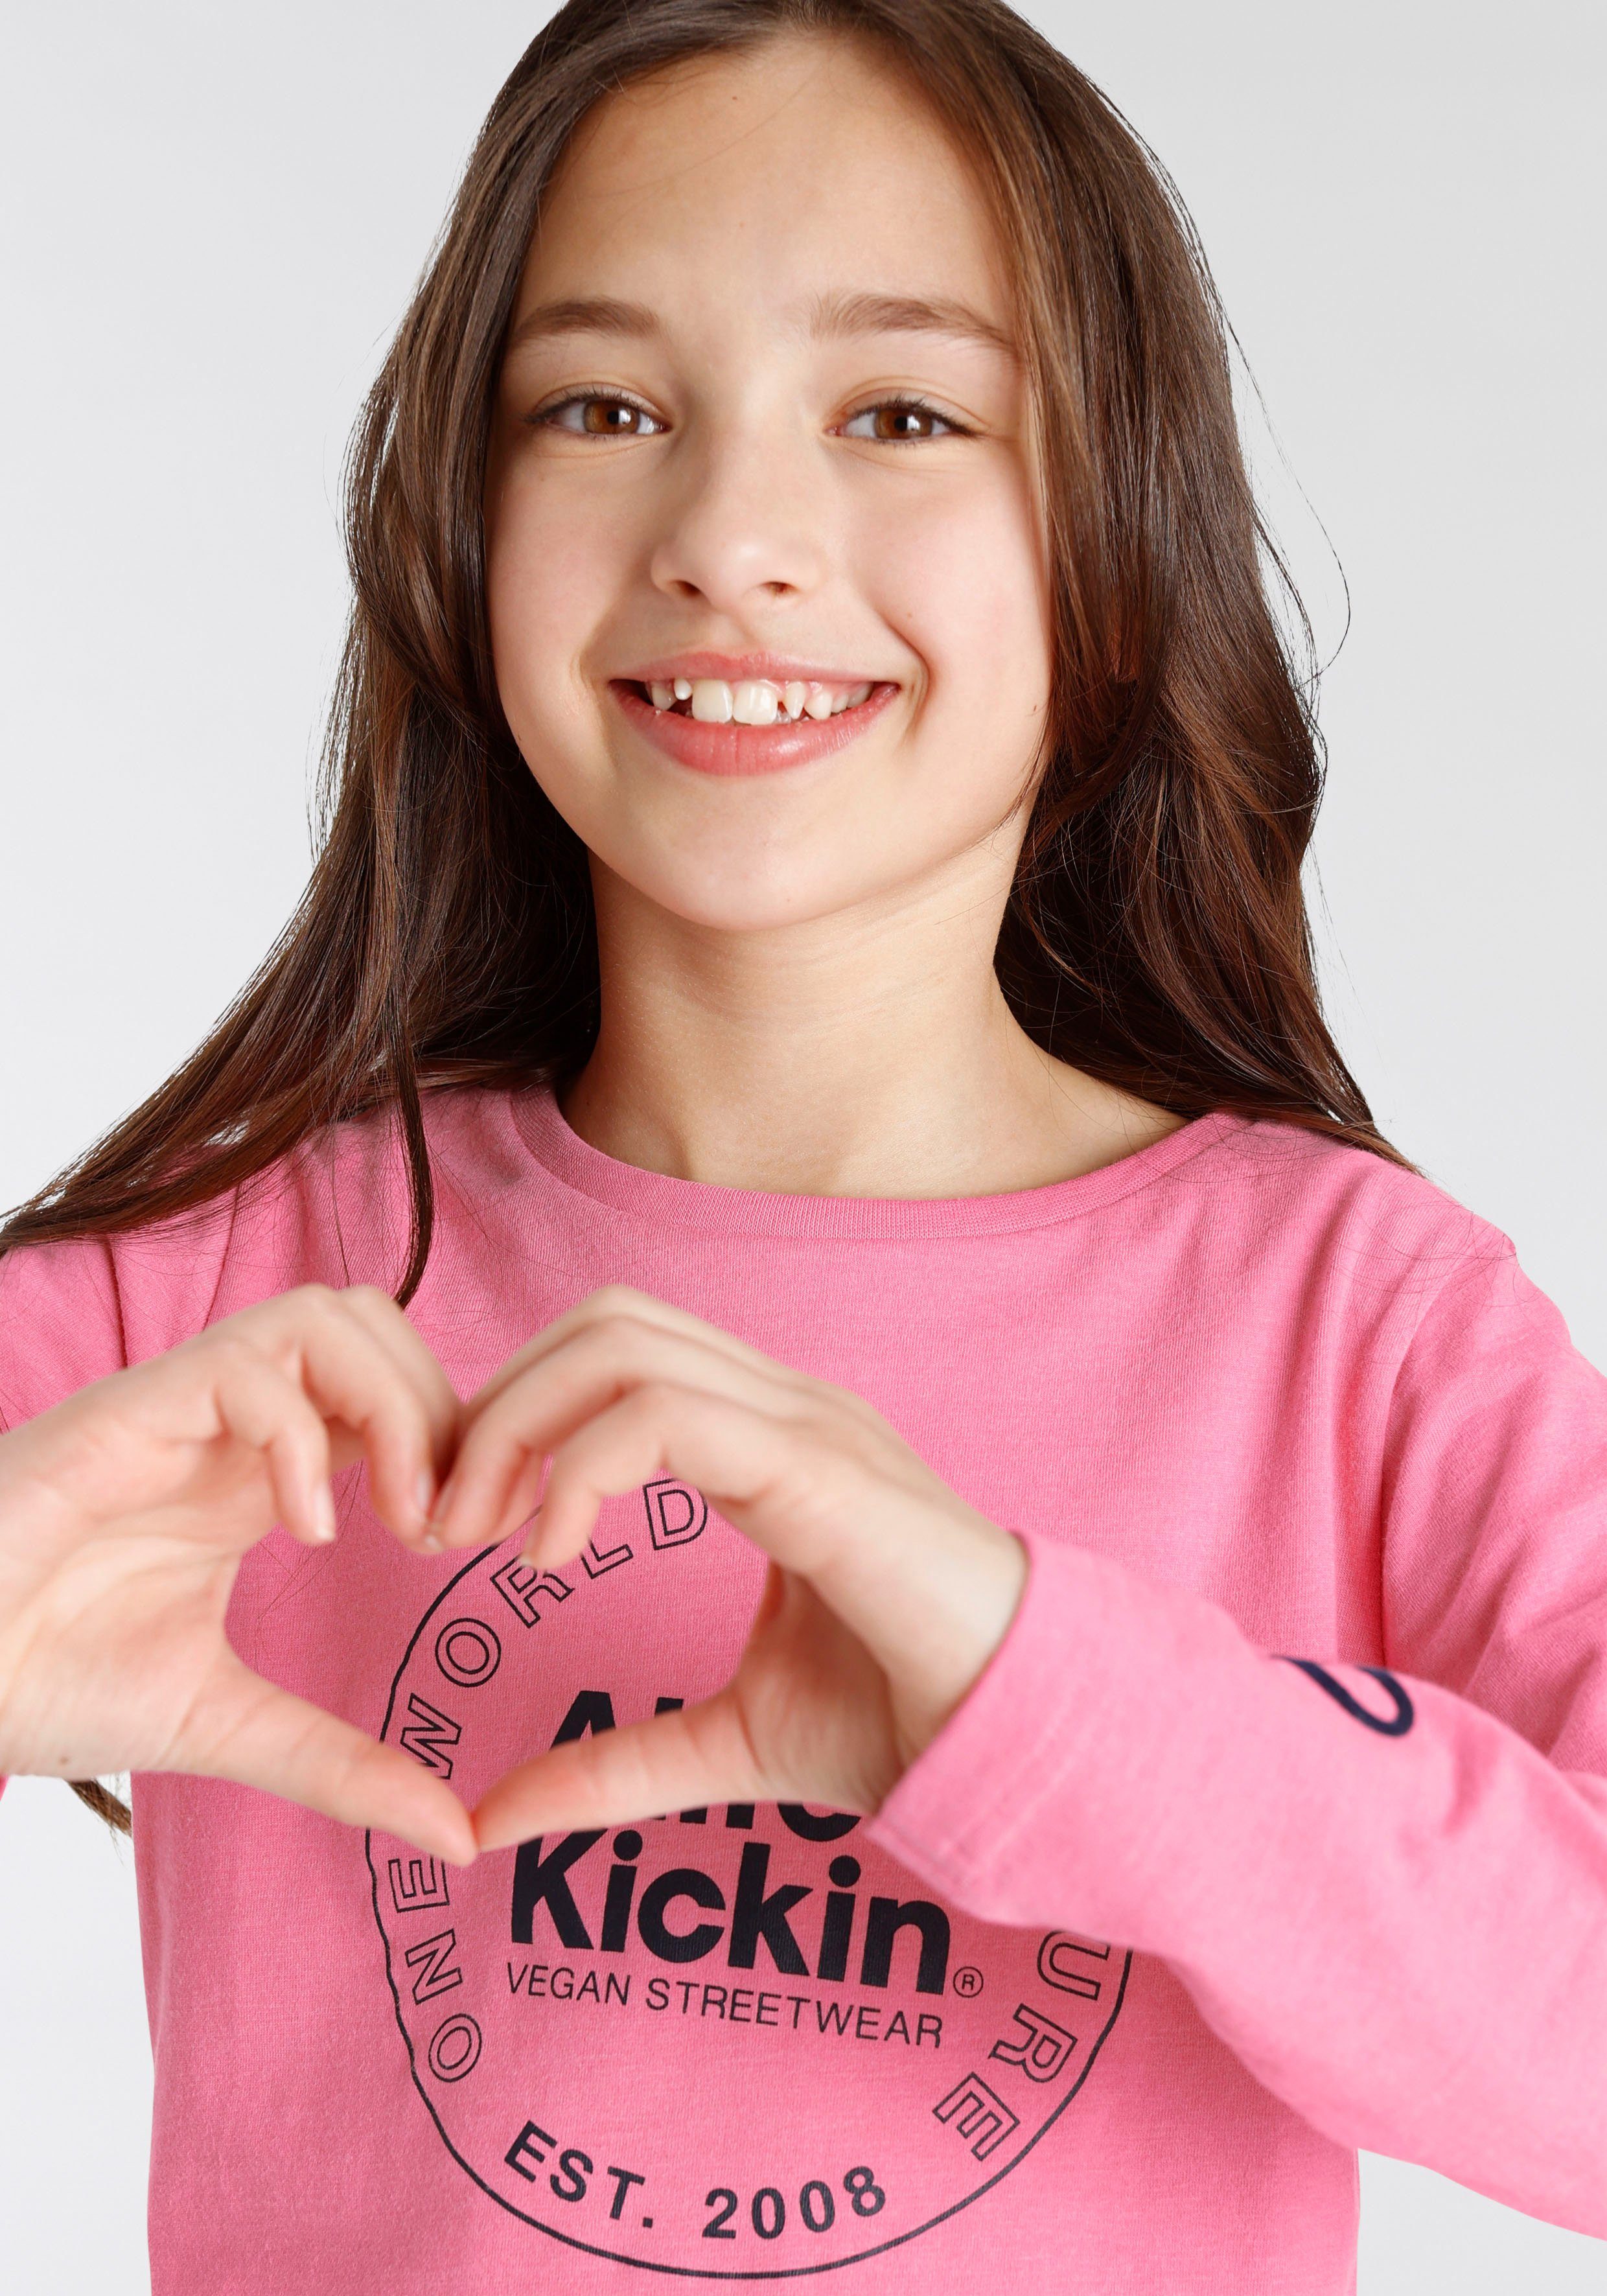 Kickin für Alife MARKE! Kickin Alife Langarmshirt mit Logo & NEUE & Kids. Druck